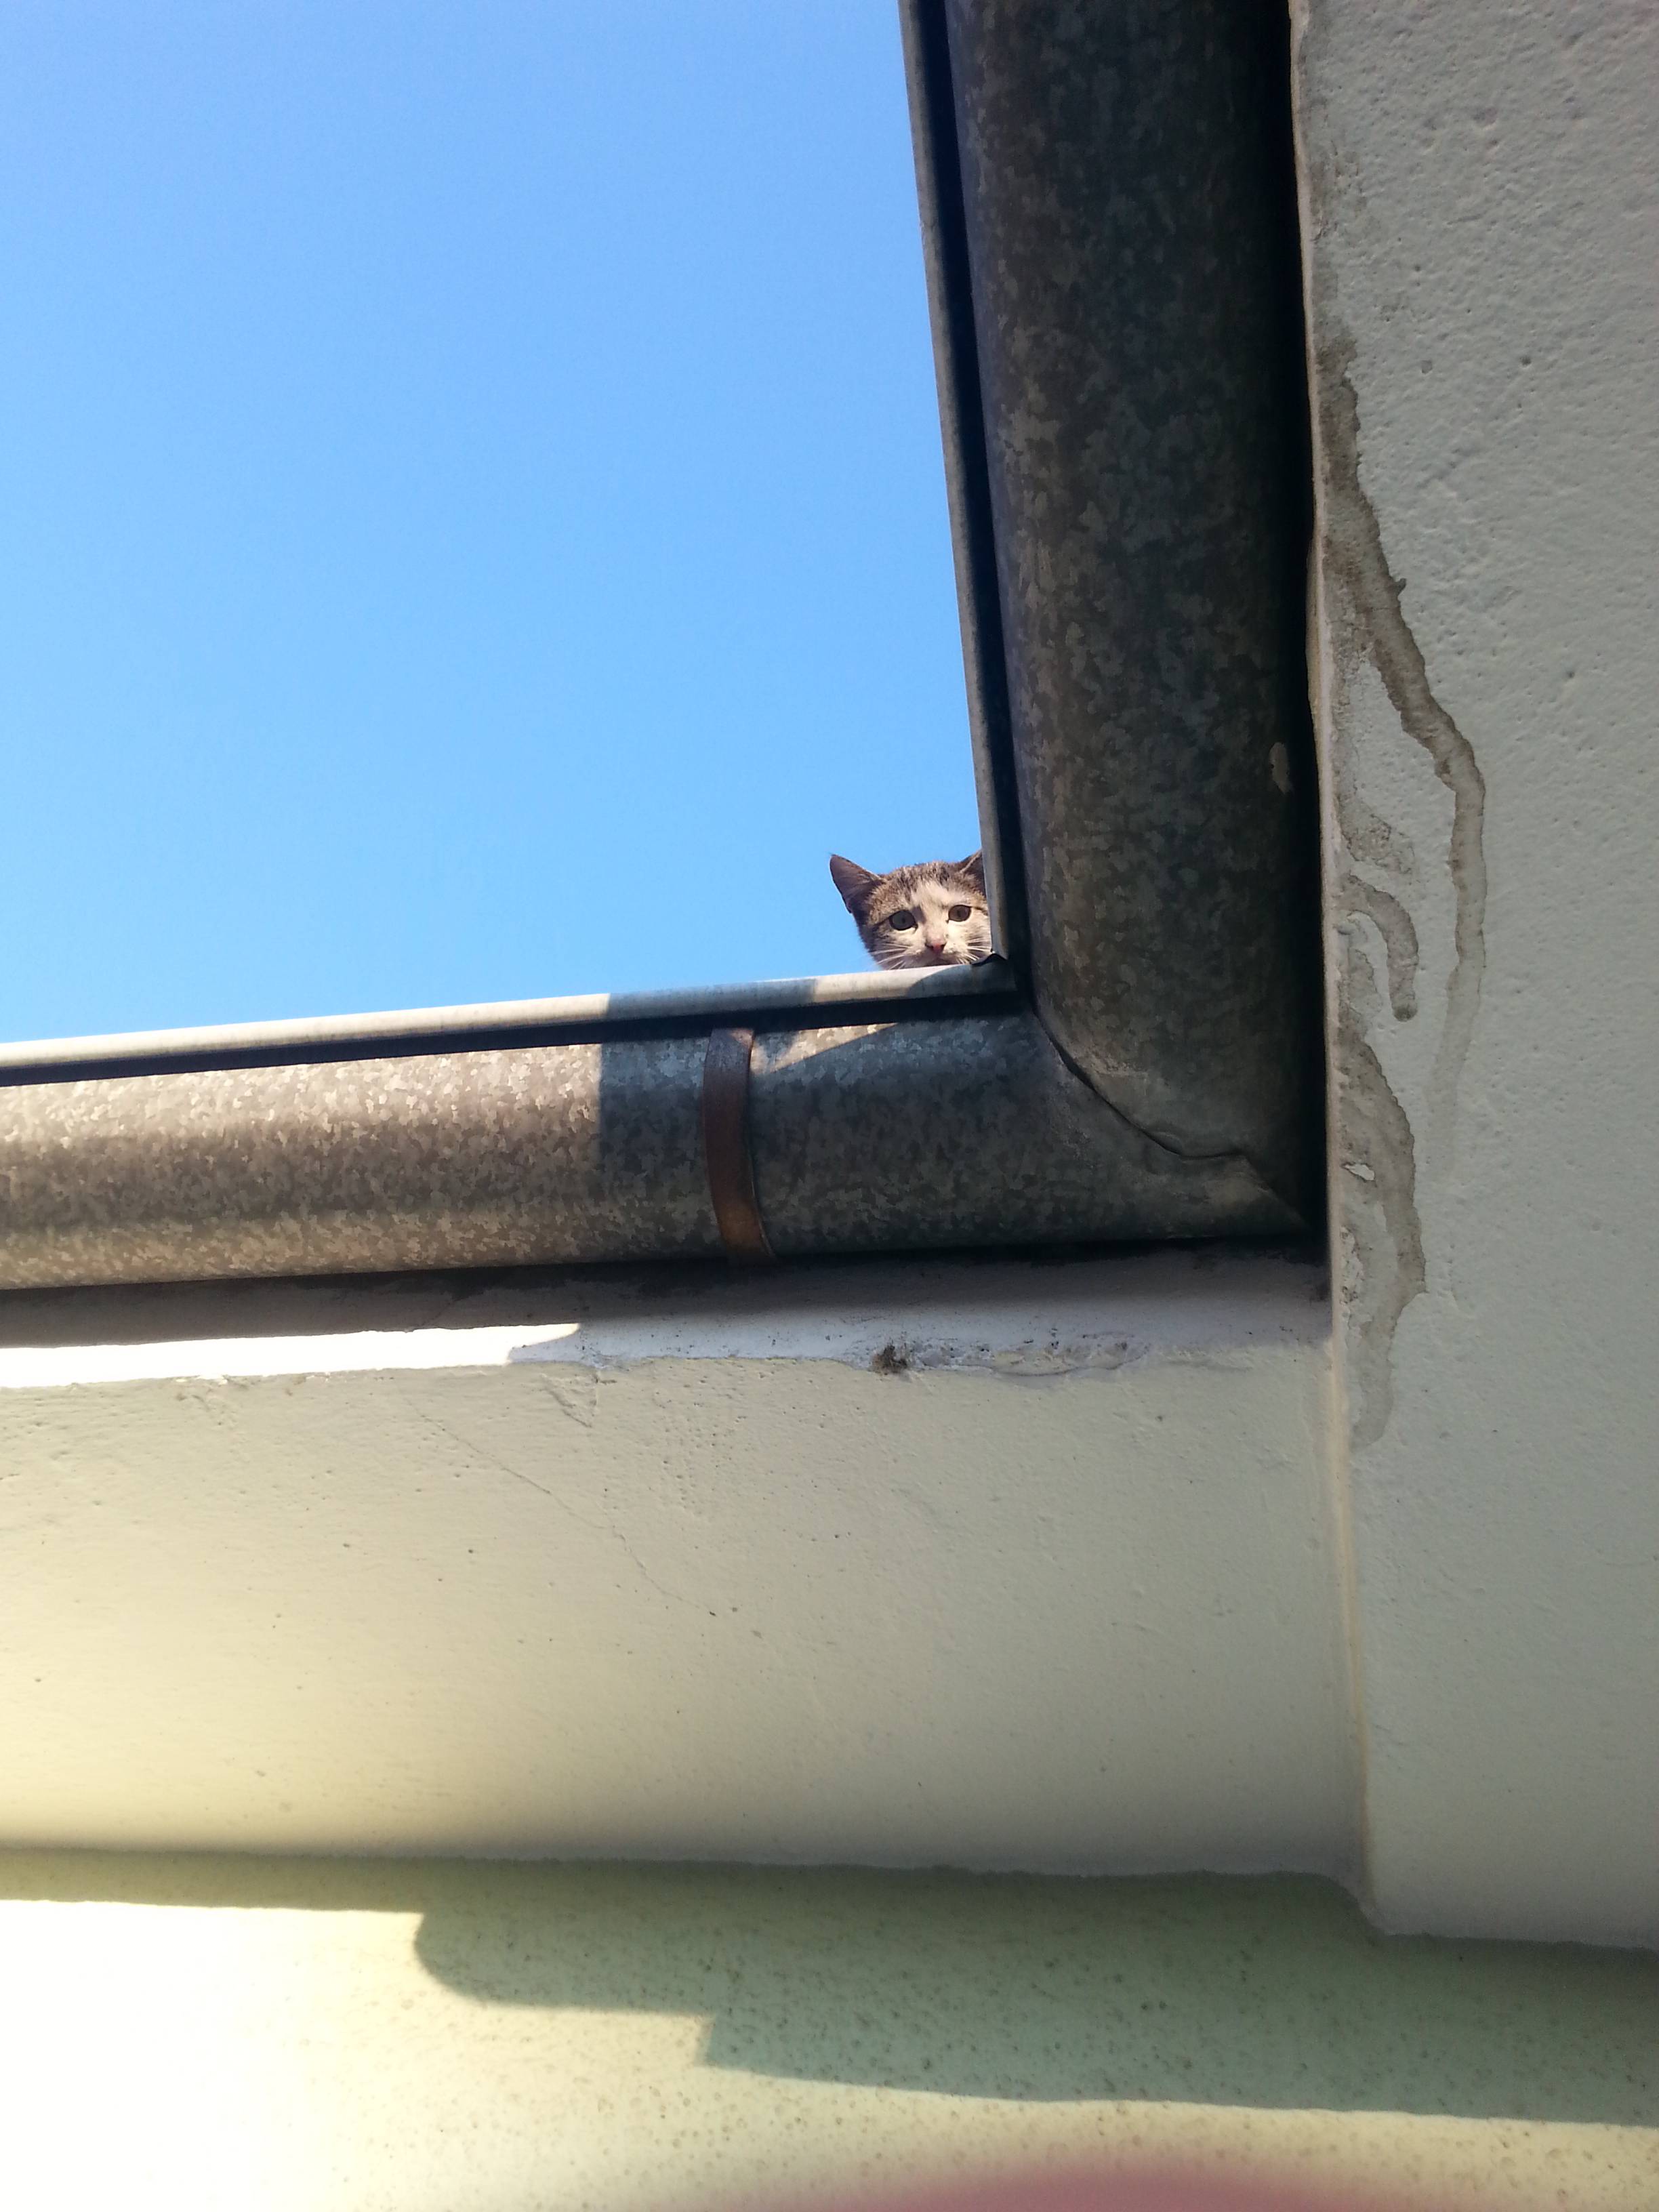  Evin çatısında kedi var 2 haftadır indiremedik. SS'li